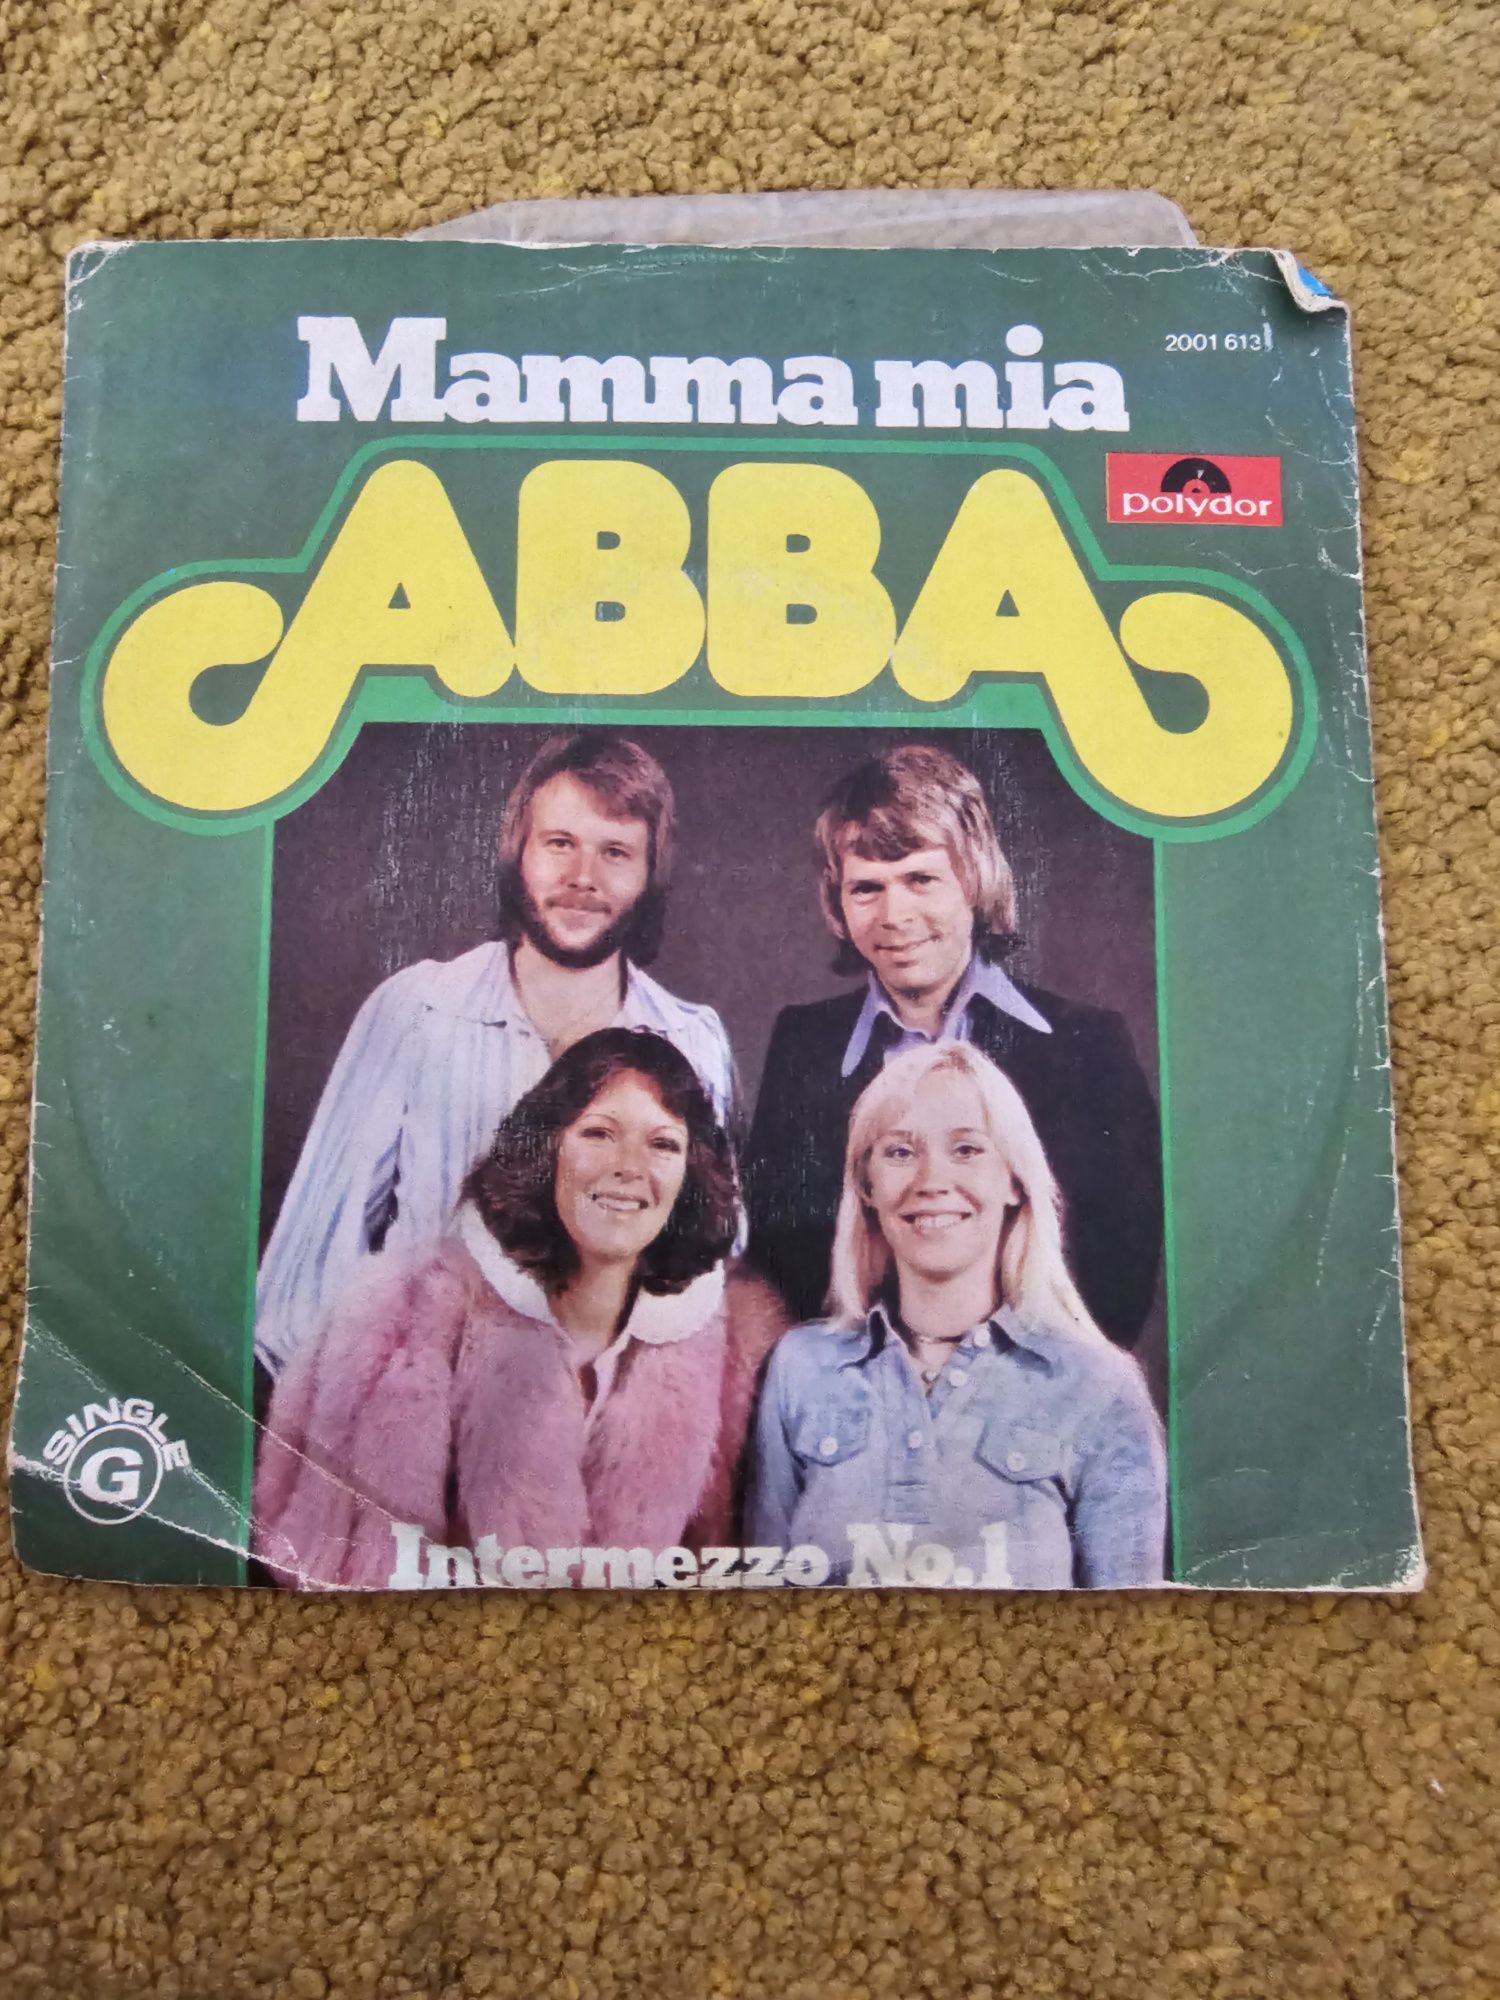 Disco vinil 7" Abba Mamma mia